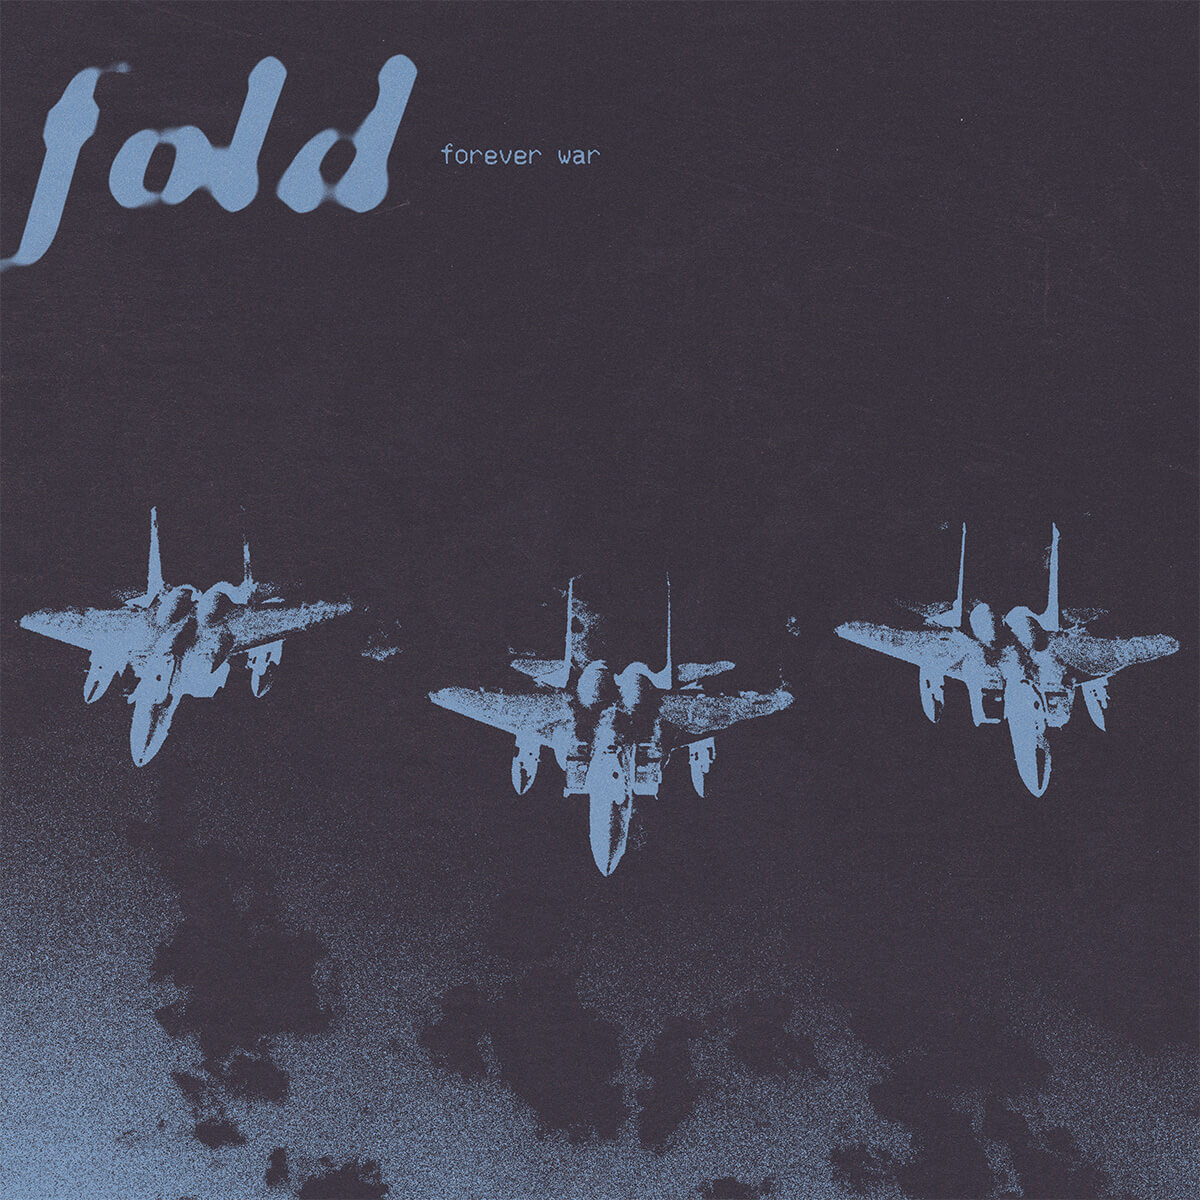 Artwork for Fold's new single Forever War